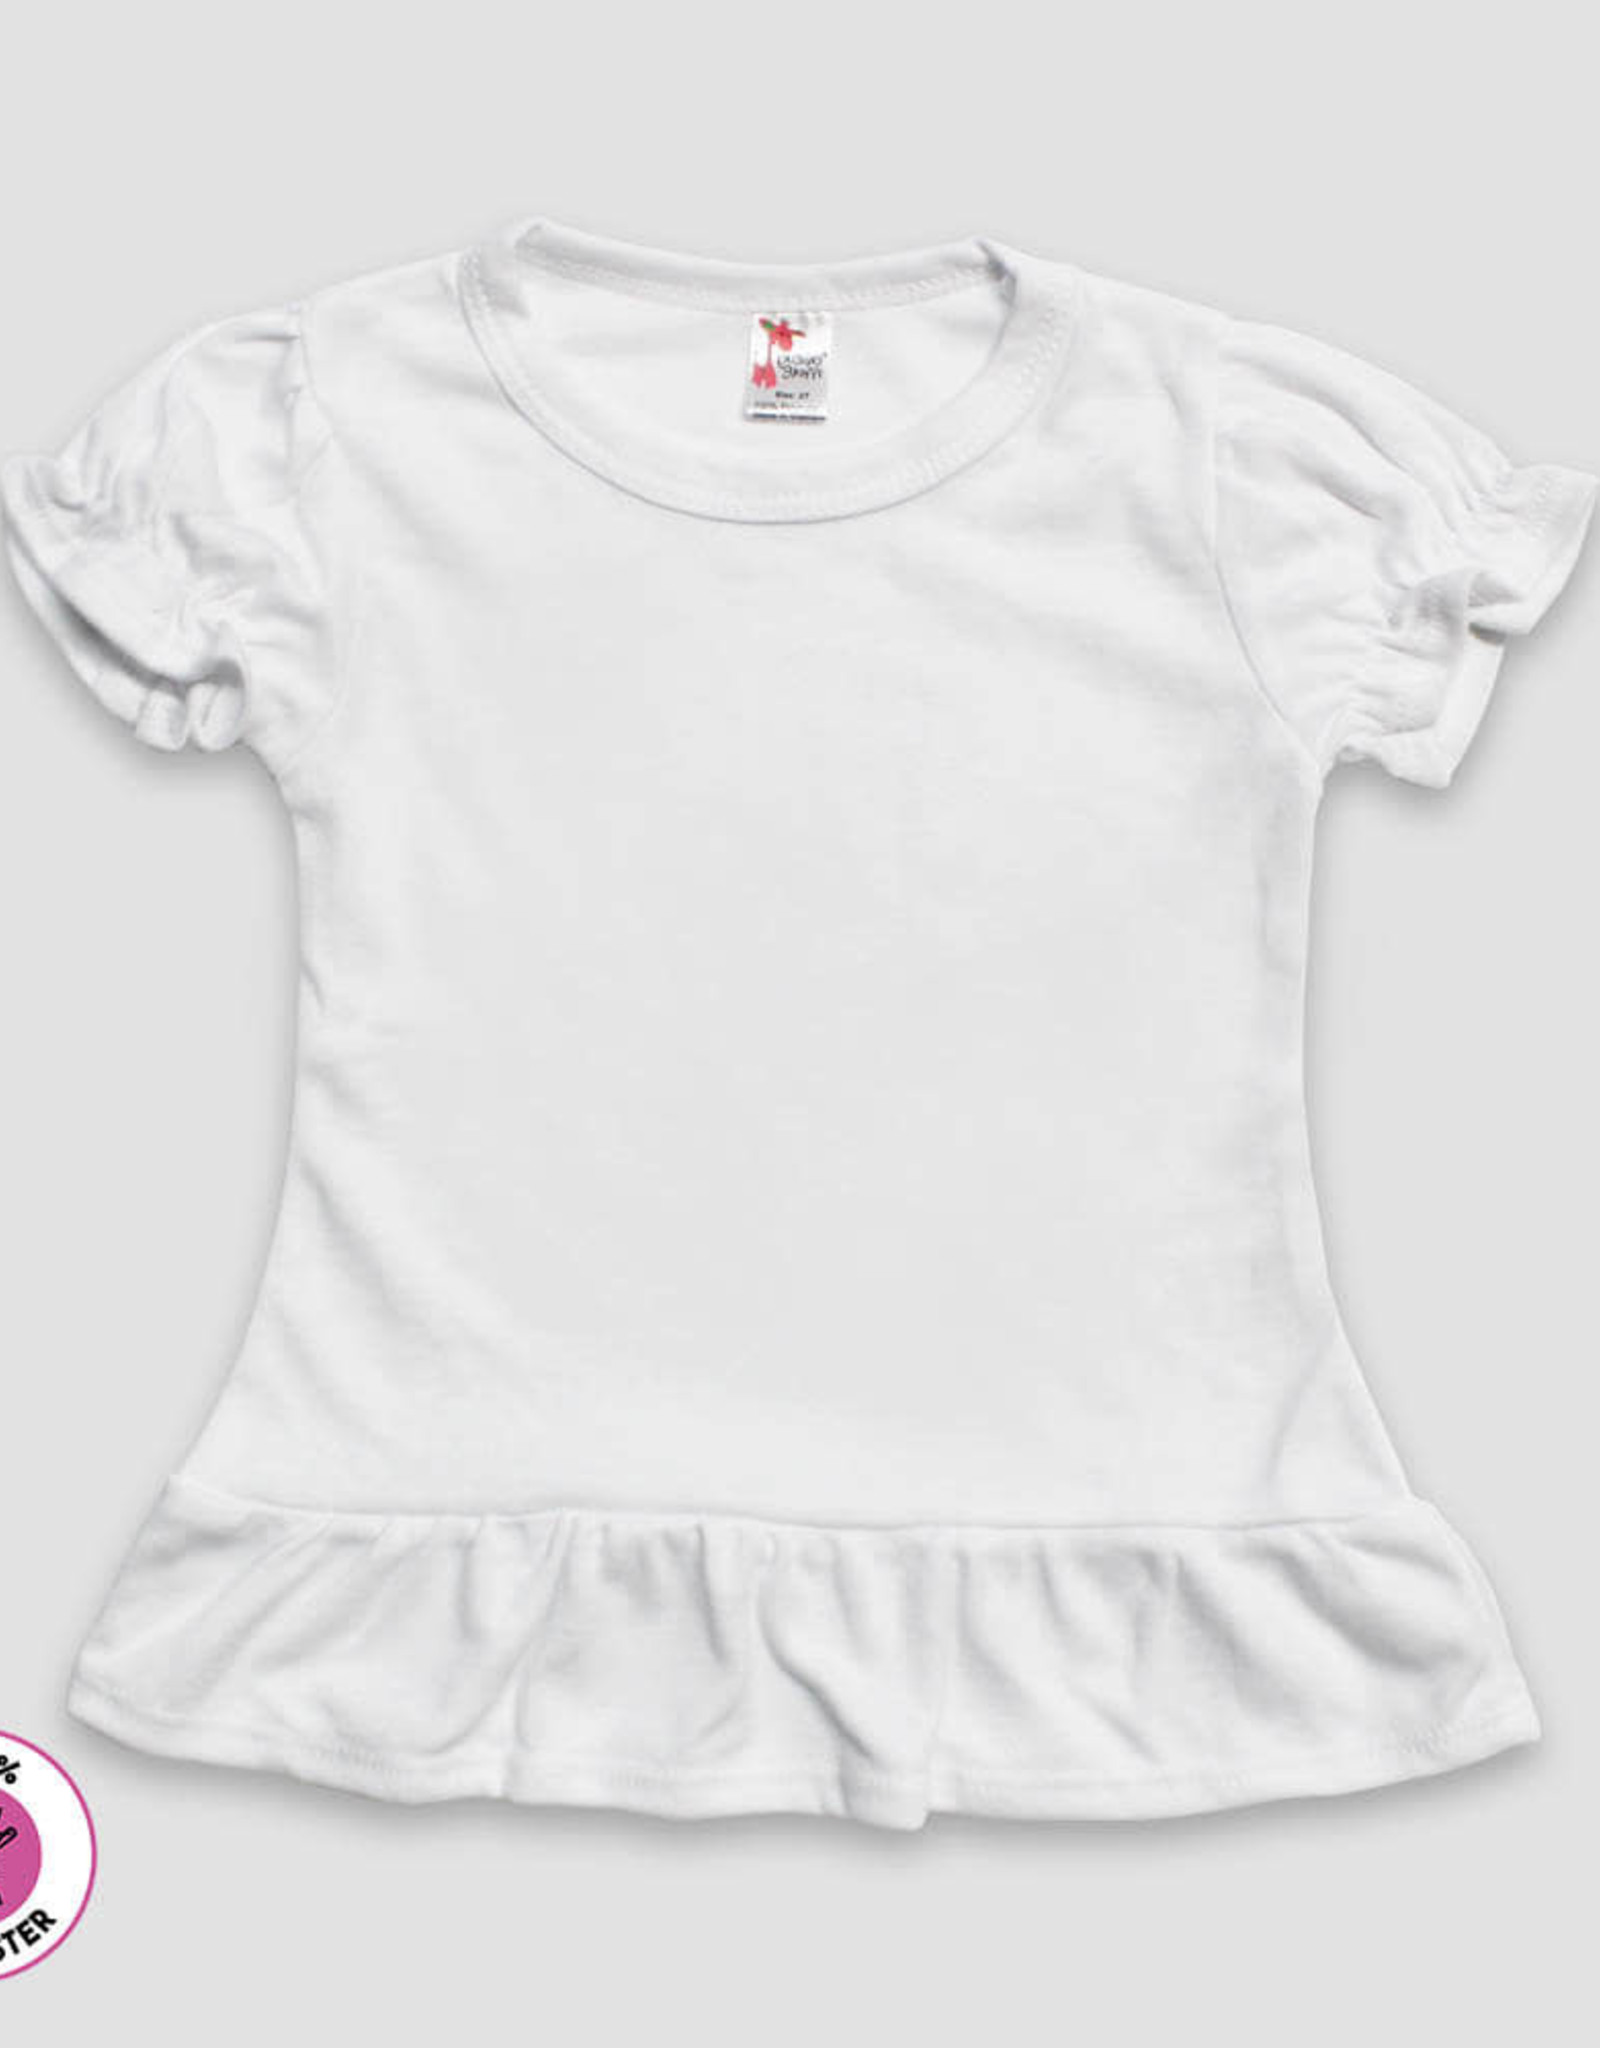 LG-Toddler/Youth Short Sleeve Ruffle Sublimation Tee